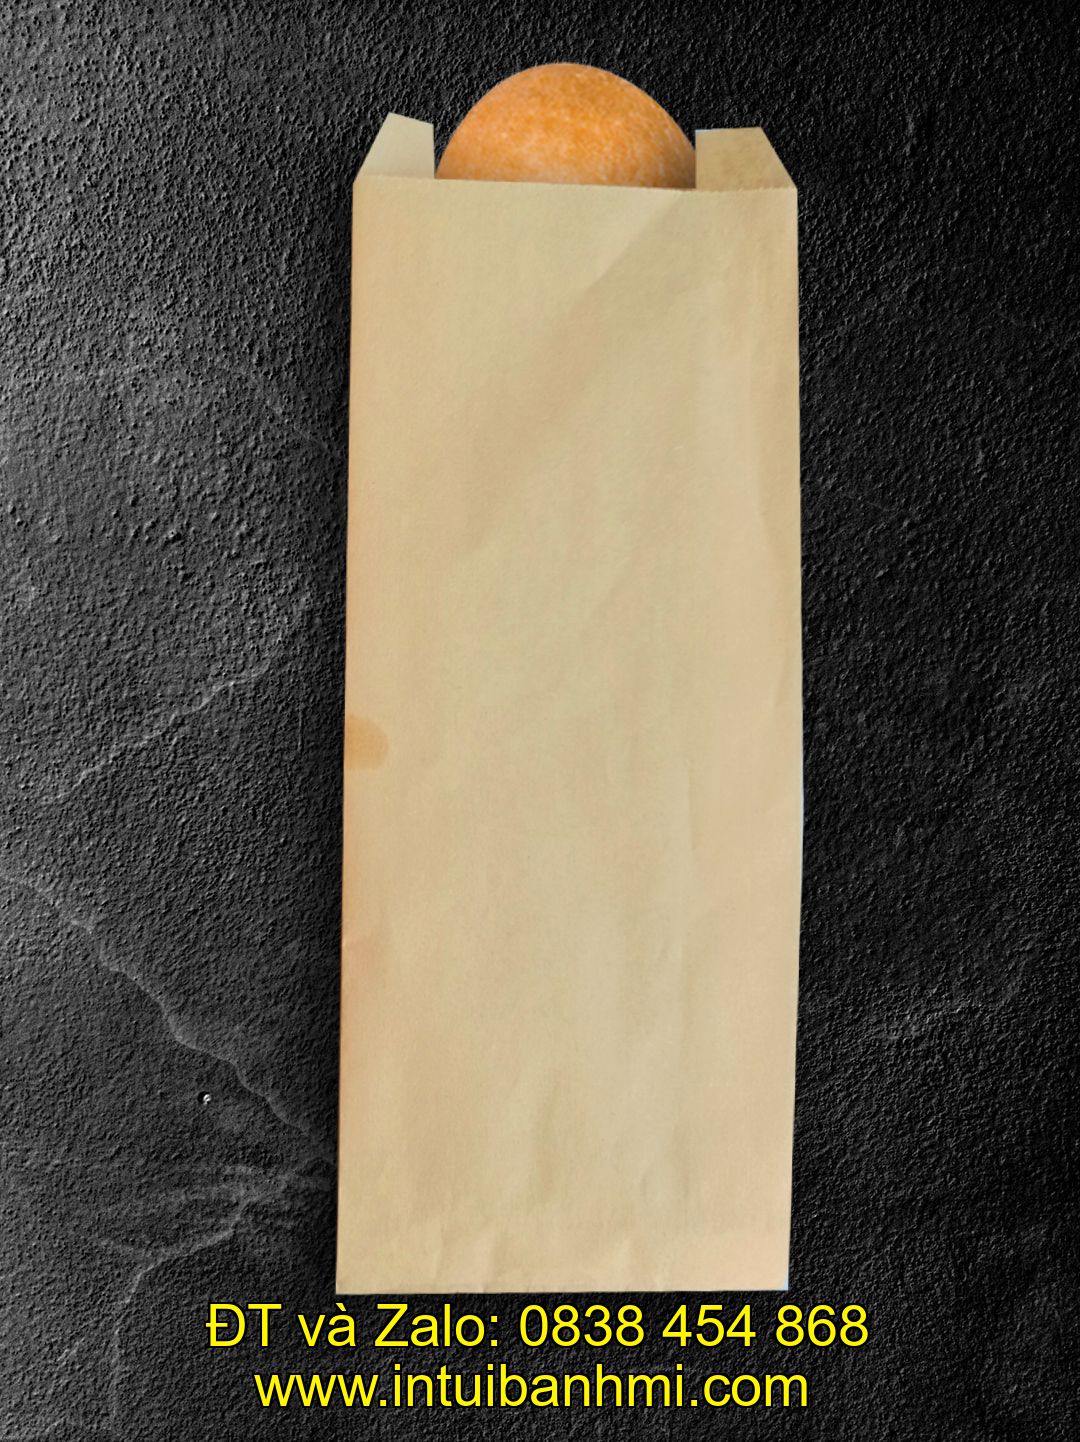 Một số điểm mạnh của túi giấy bánh mì